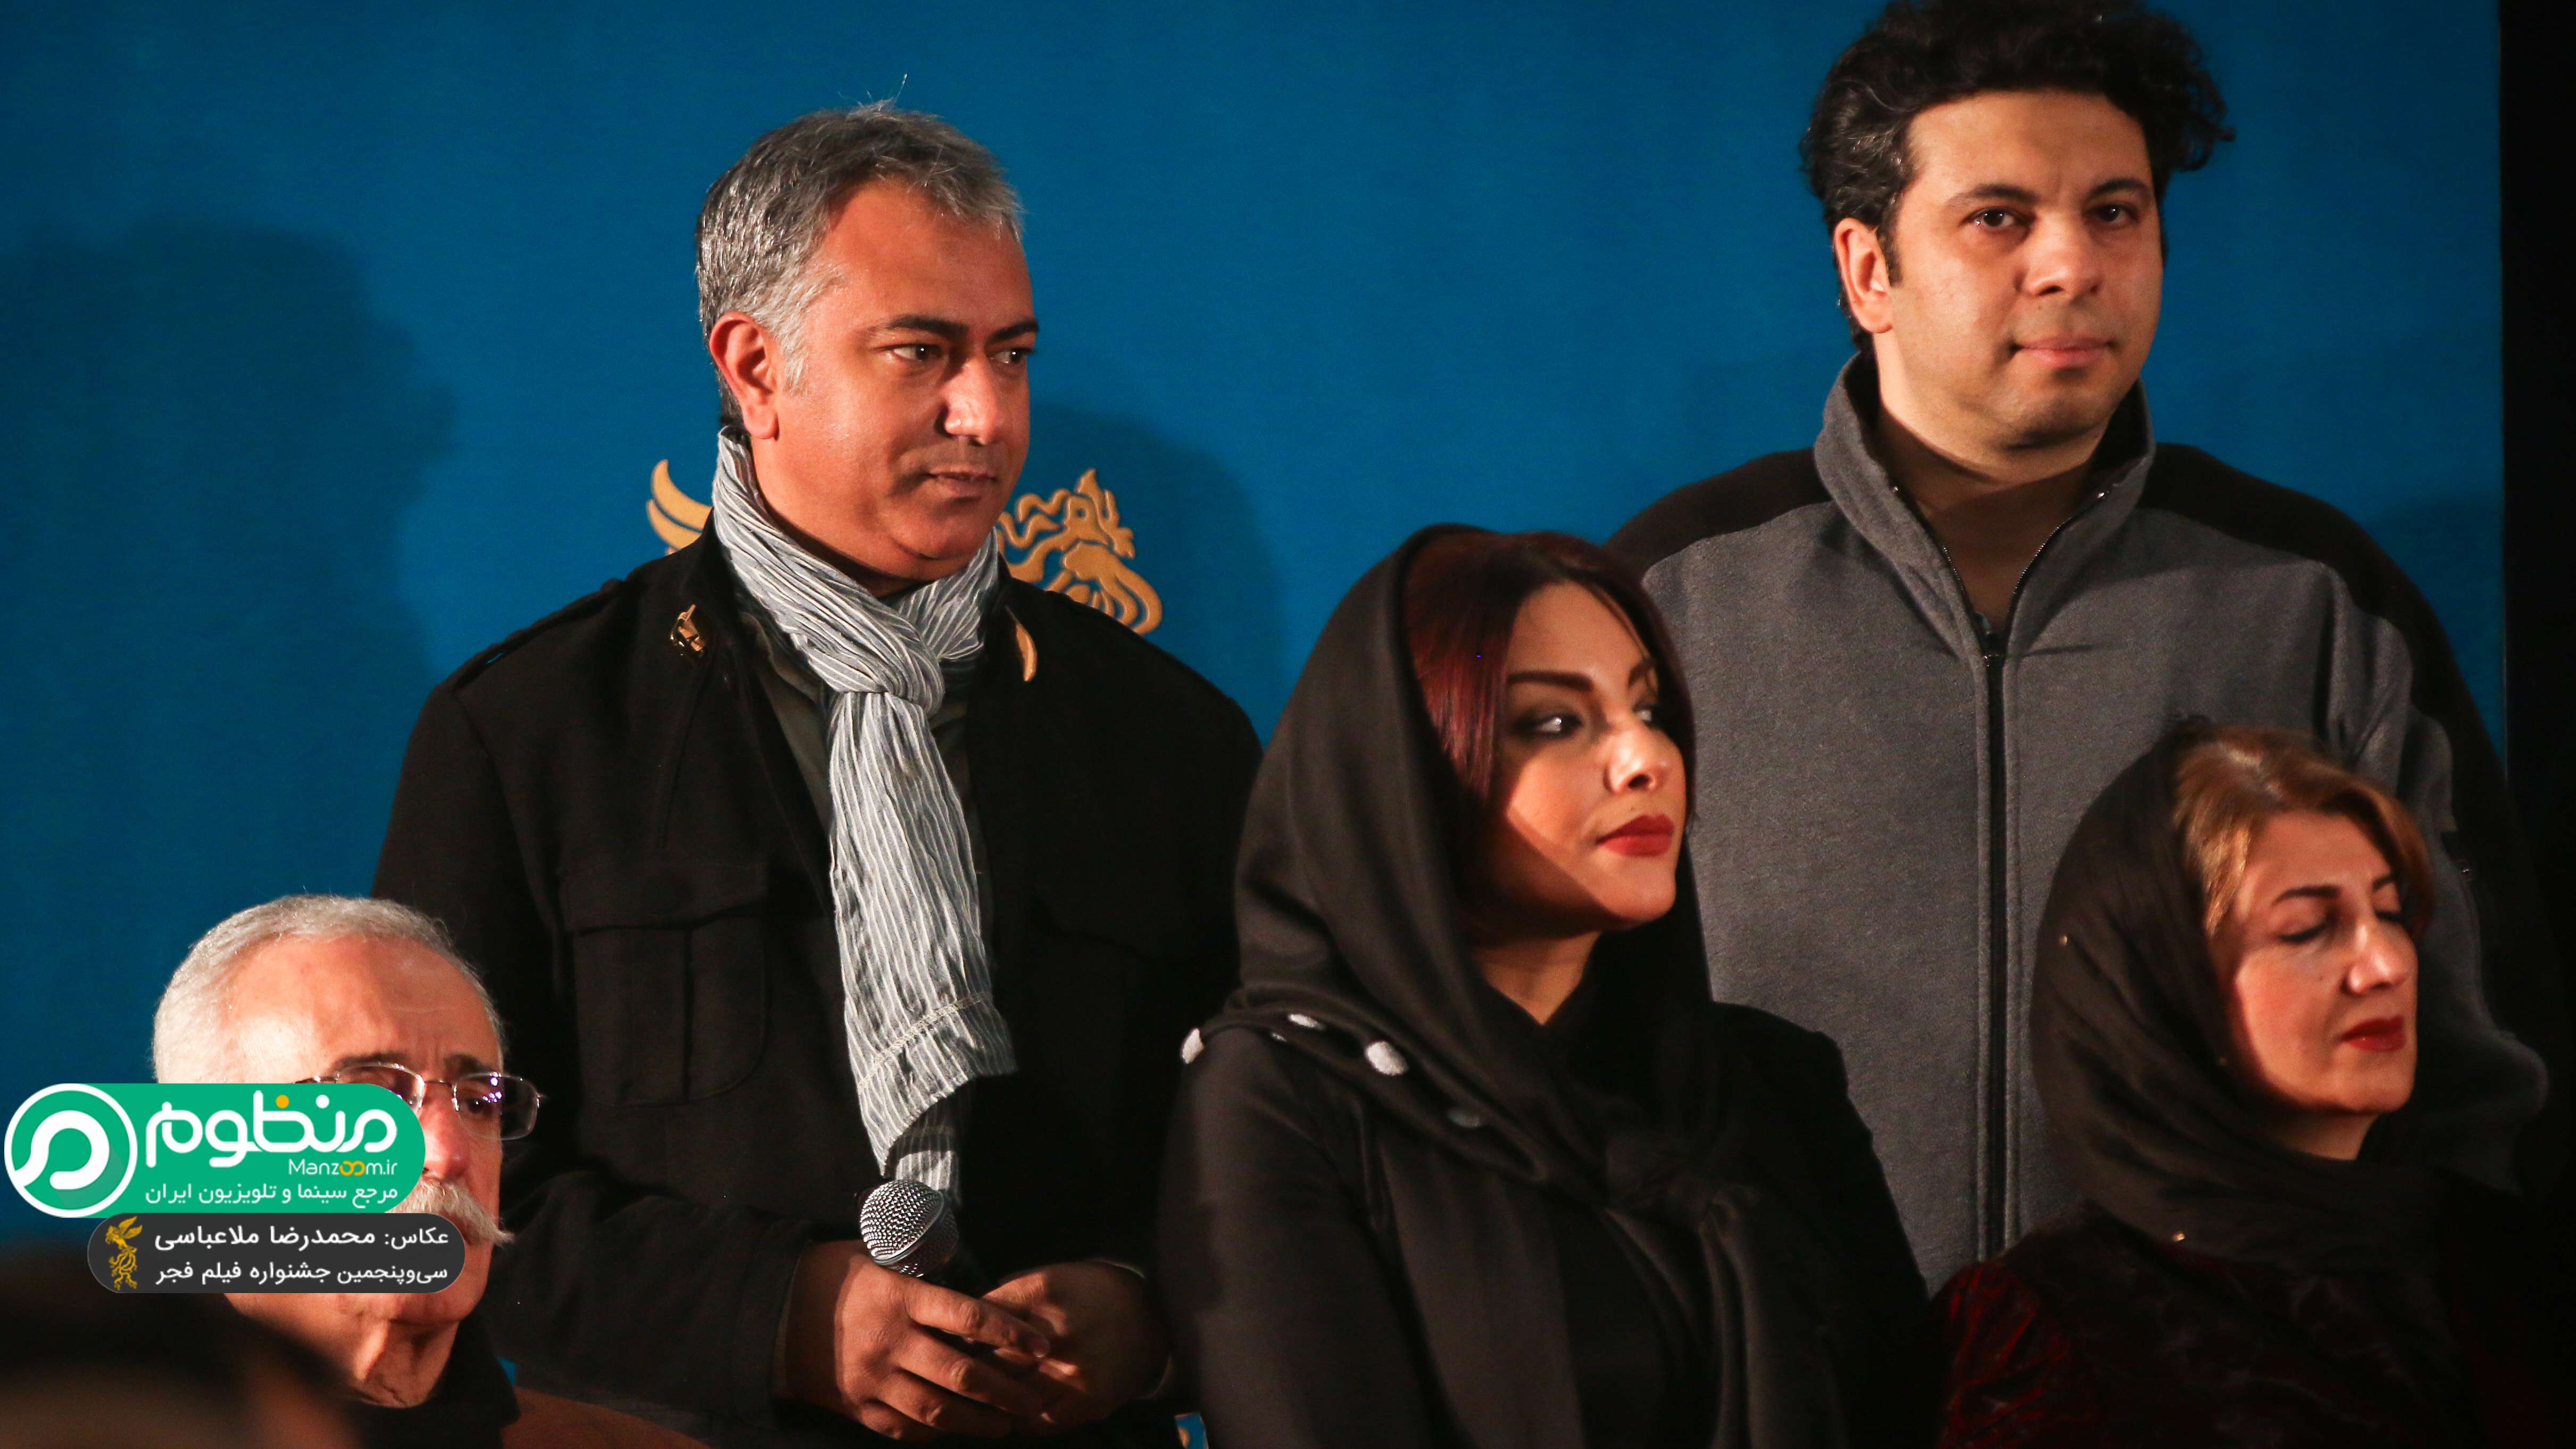 محمدرضا هدایتی در فرش قرمز فیلم سینمایی فصل نرگس